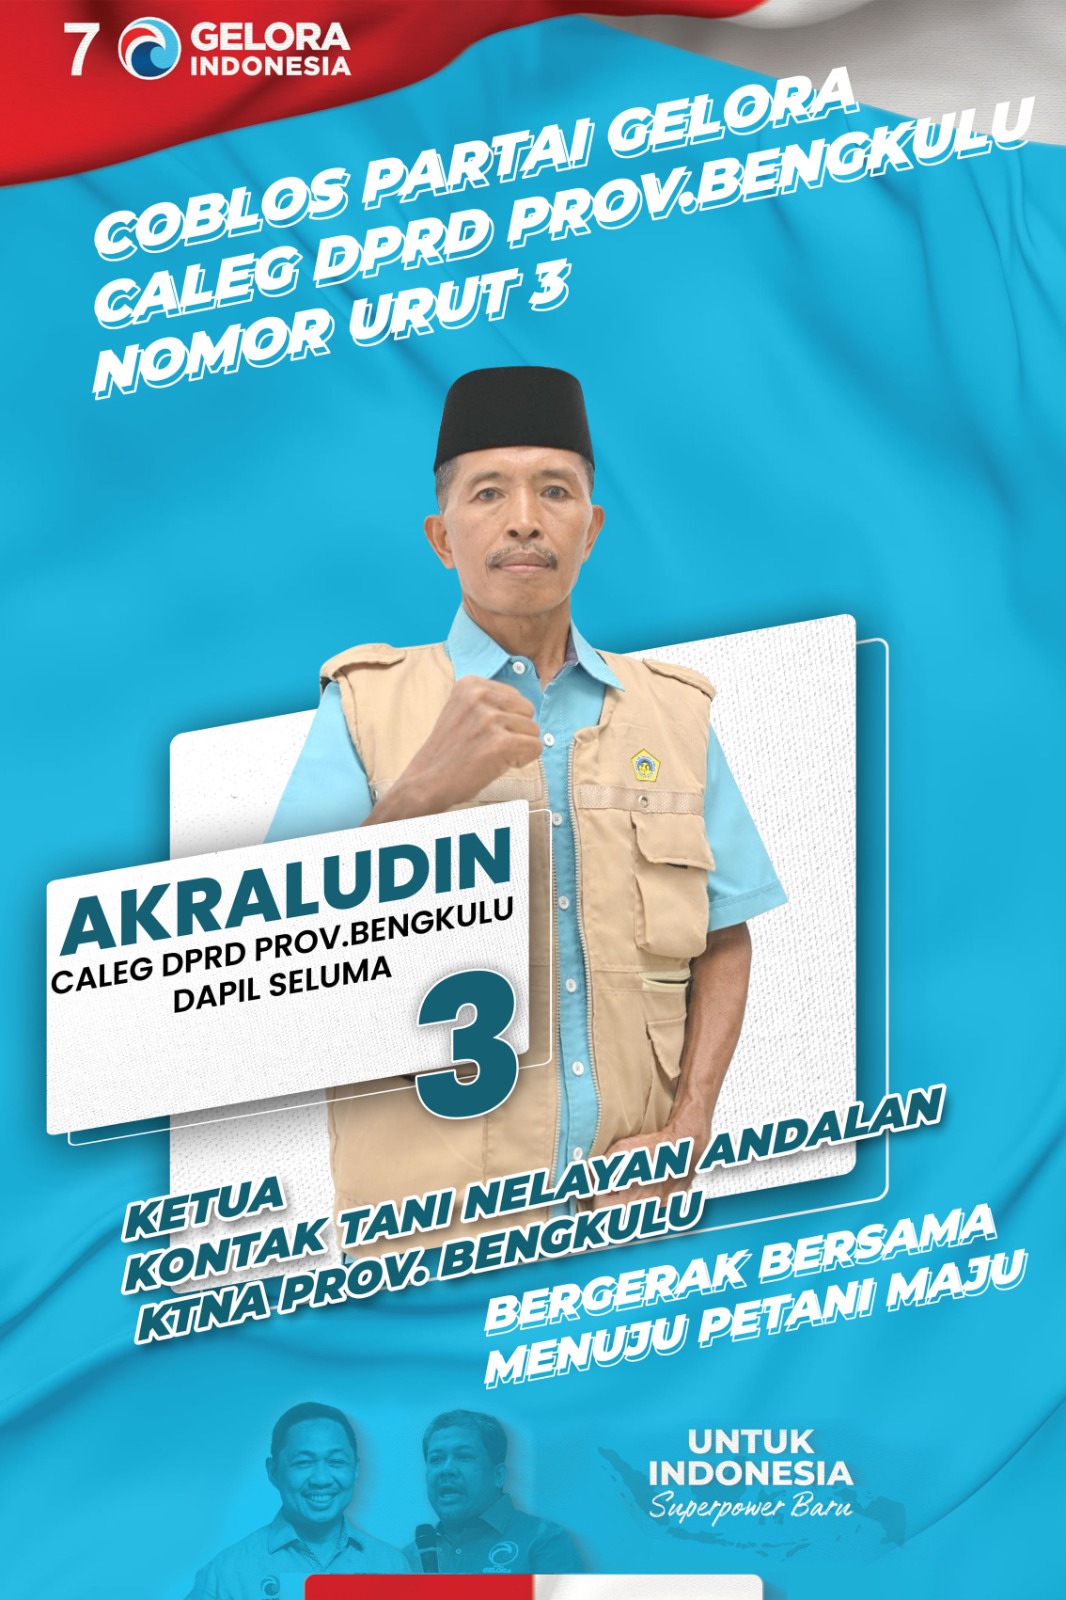 Akraludin Ketua KTNA Propinsi Bengkulu Maju Pileg Propinsi Bengkulu Dapil Seluma 